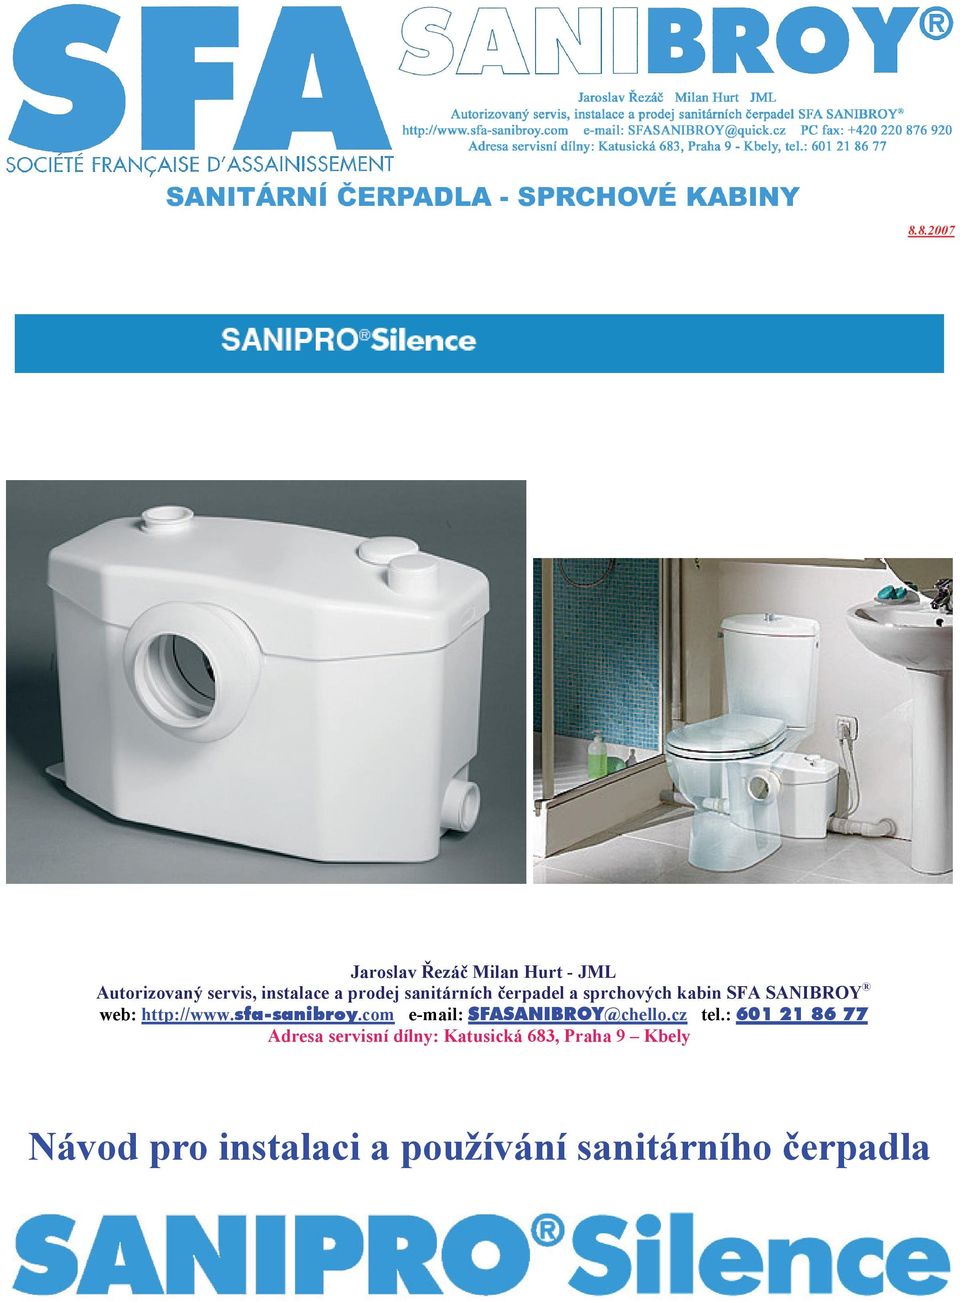 sfa-sanibroy.com e-mail: SFASANIBROY@chello.cz tel.